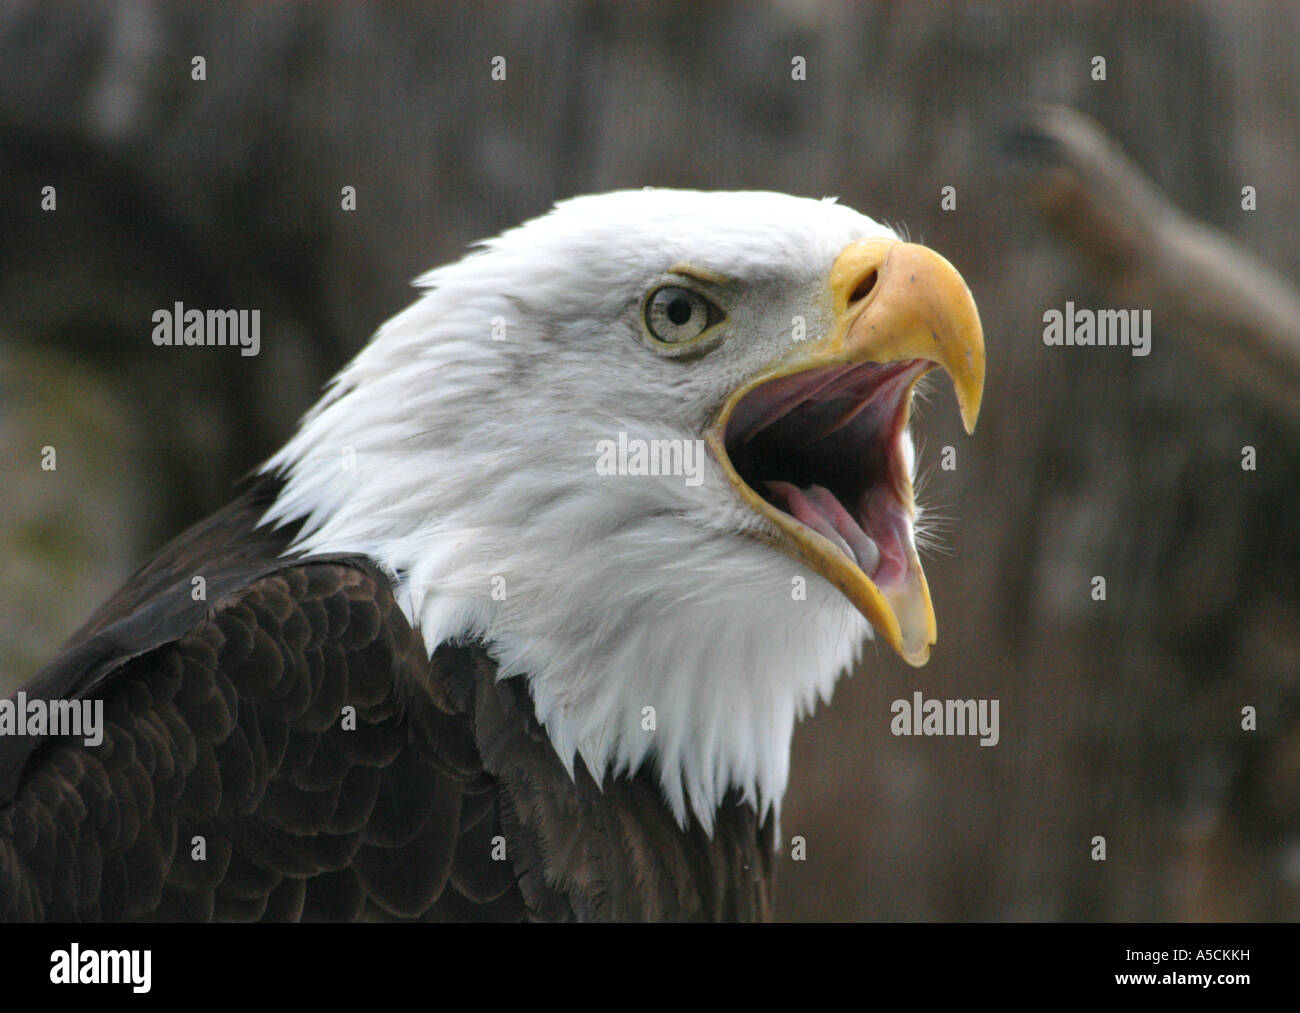 Bald eagle (Haliaeetus leucocephalus), the national emblem of the United States, at Prague Zoo, Czech Republic Stock Photo